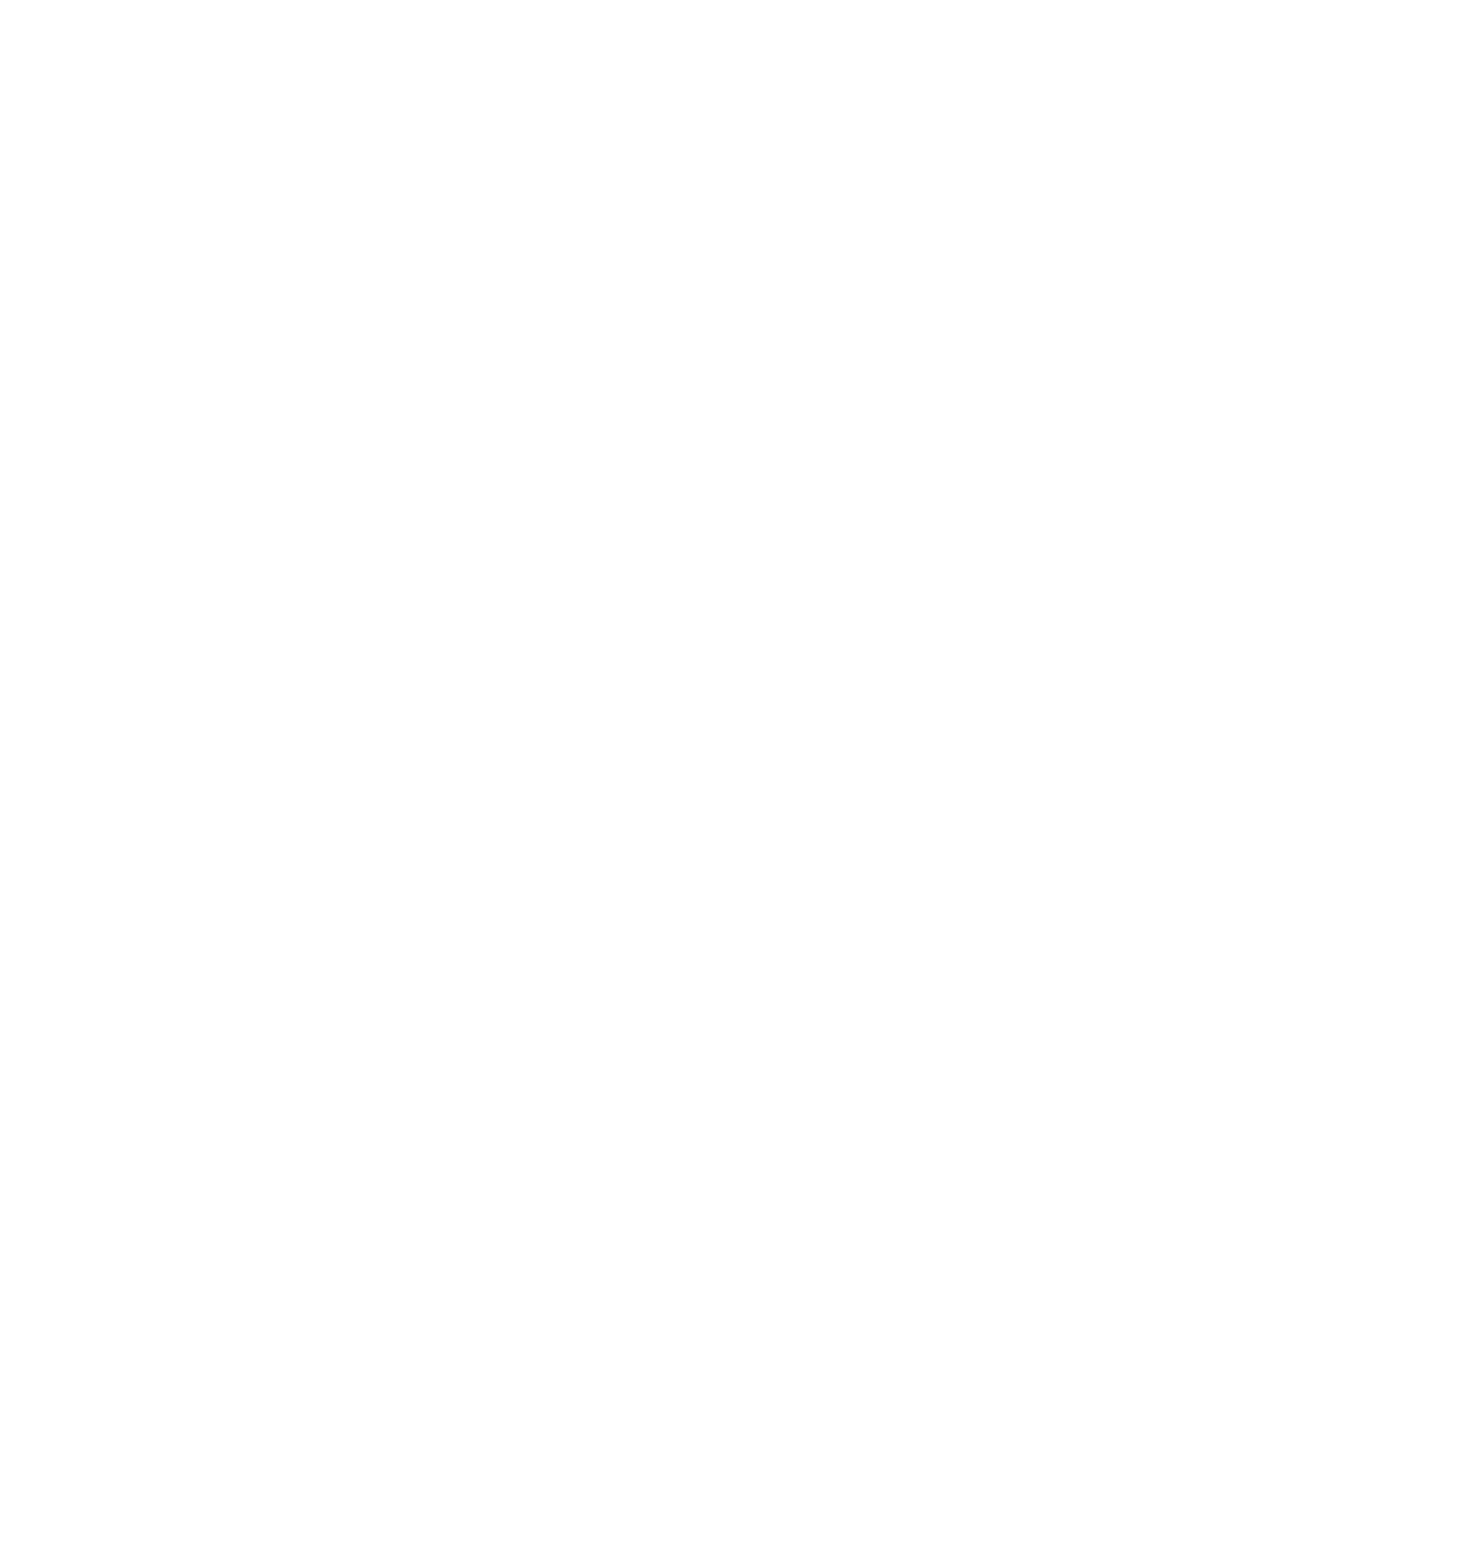 Bangkok Dusit Medical Services (BDMS) logo for dark backgrounds (transparent PNG)